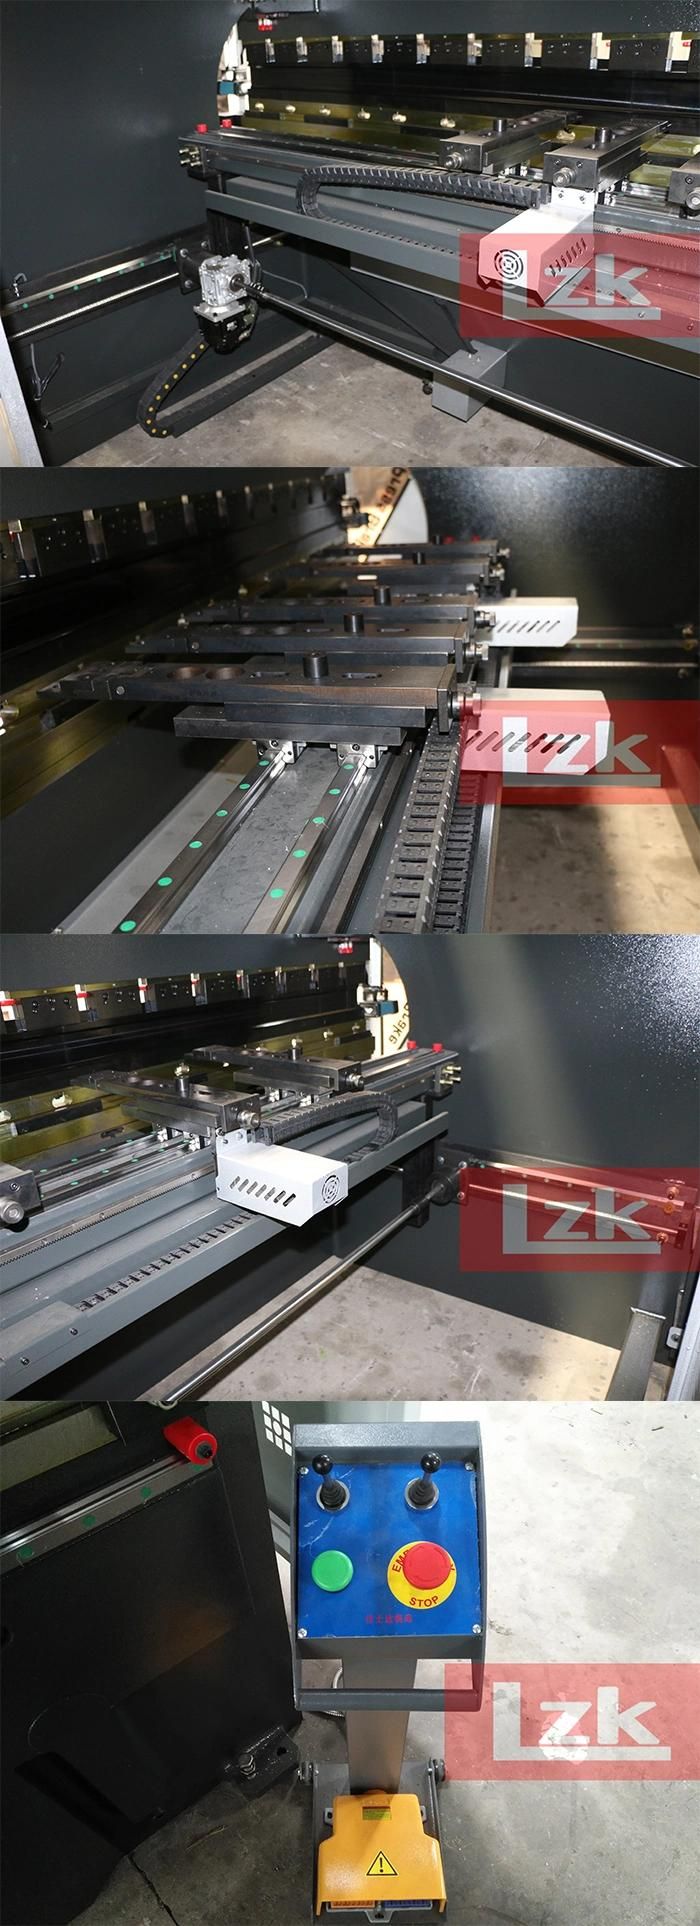 Lzk Hpb Hydraulic CNC Press Brake 200t4000 Da58t 4+1 Axes